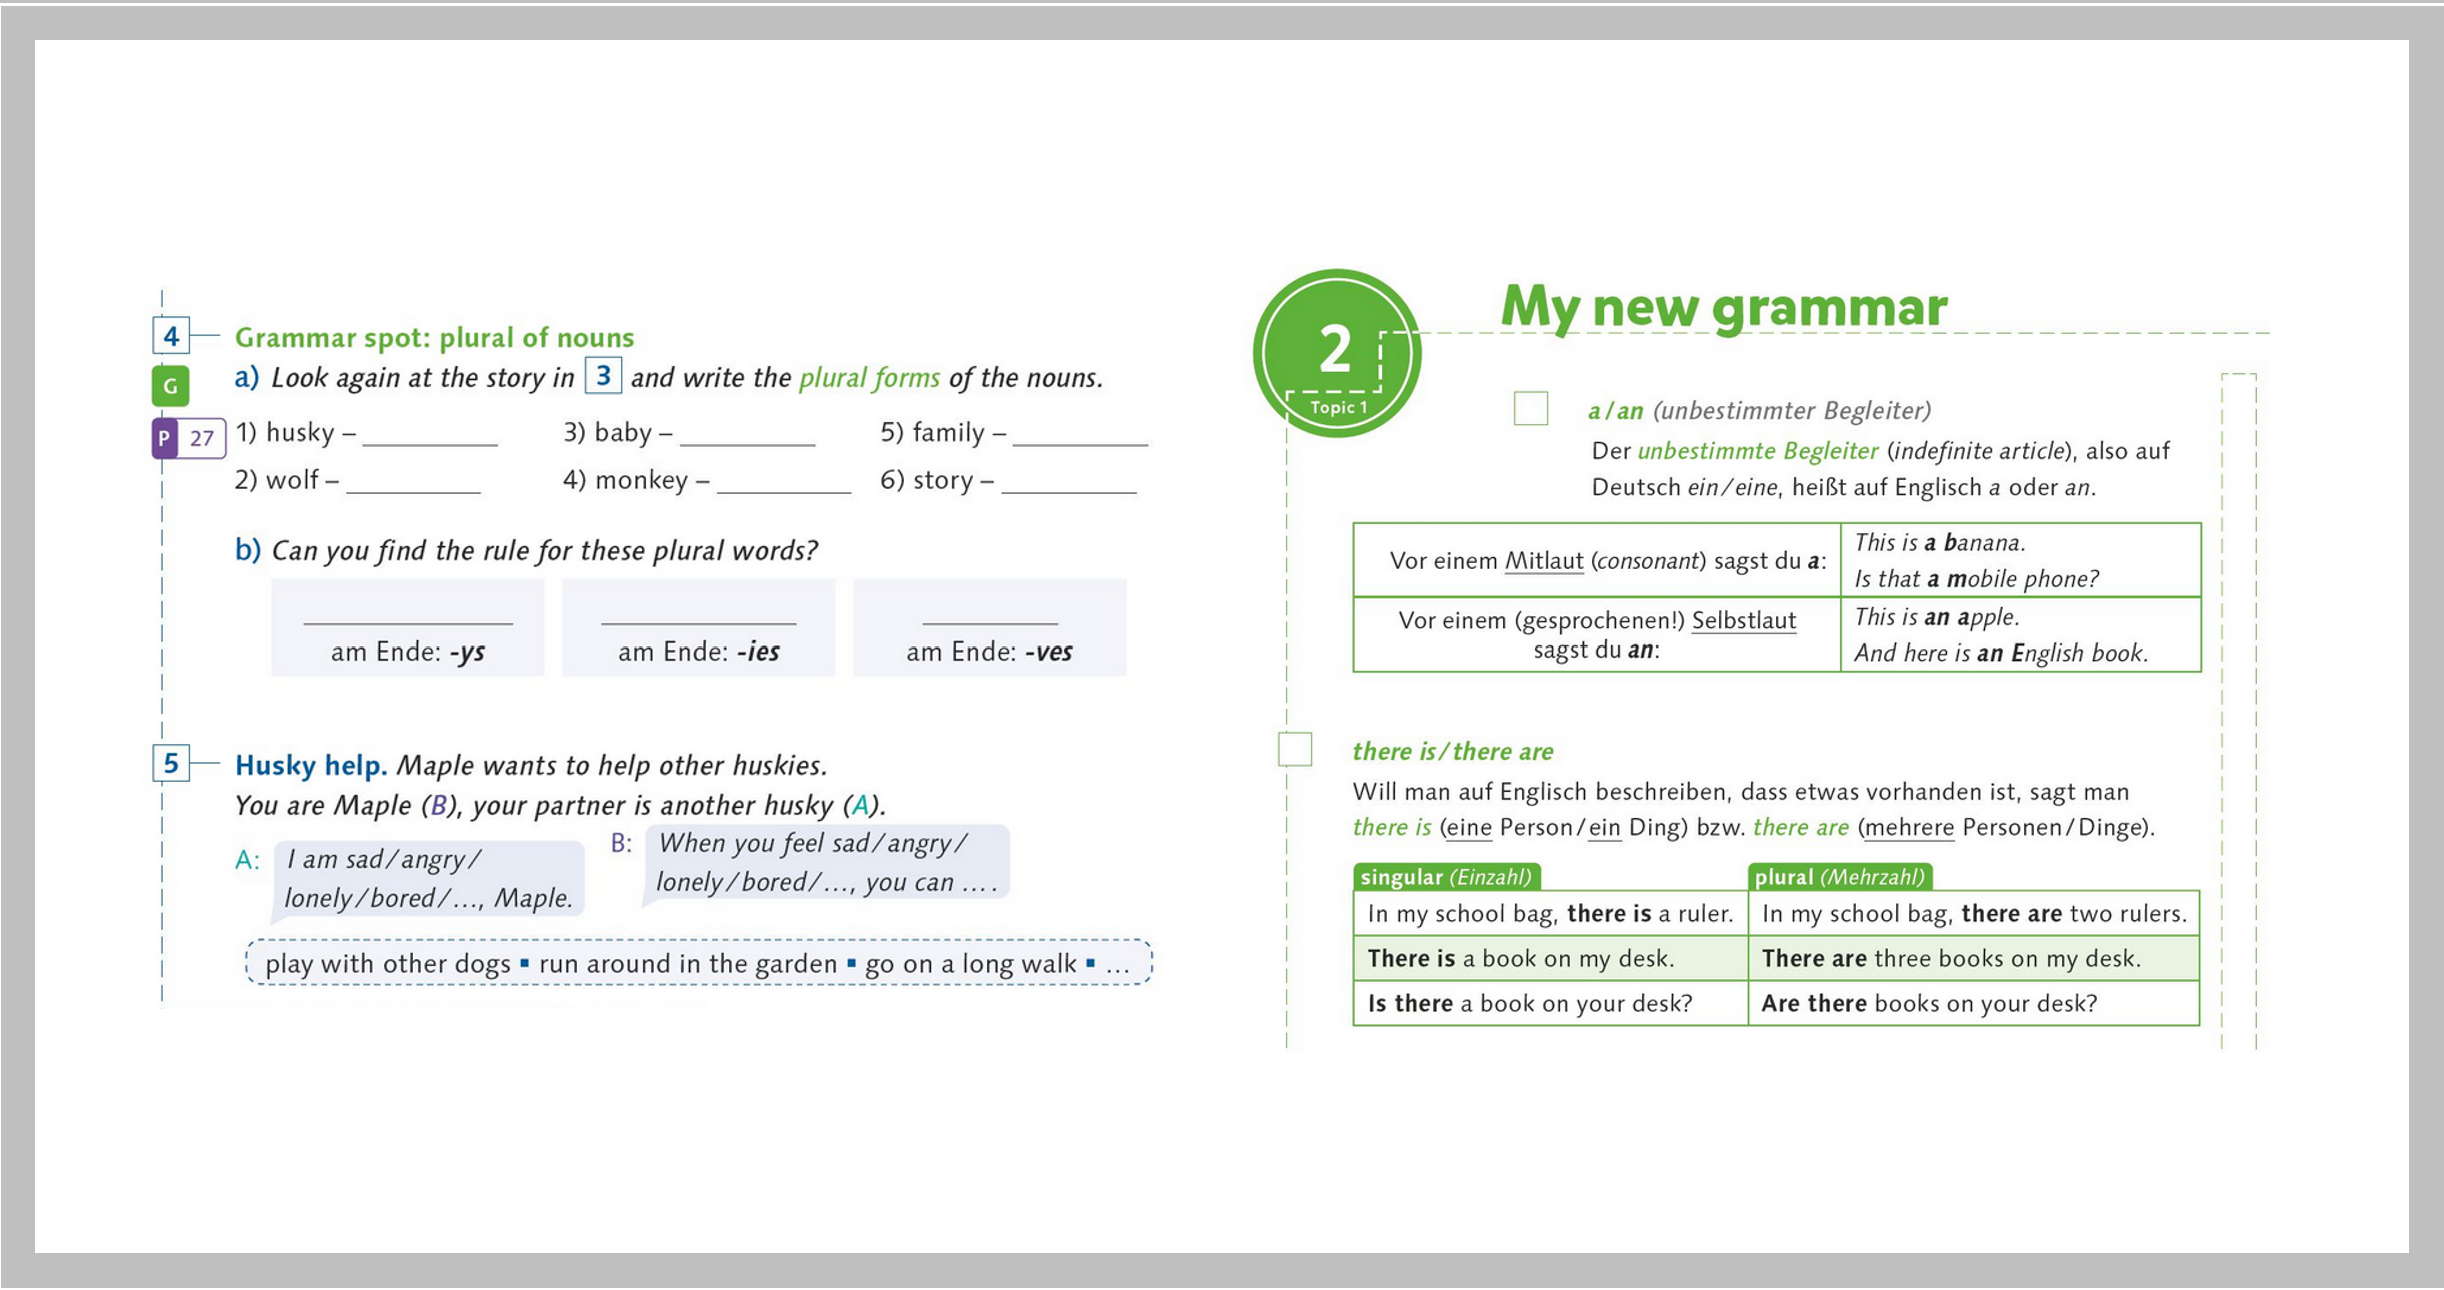 Grammar spot und Auszug aus My new grammar